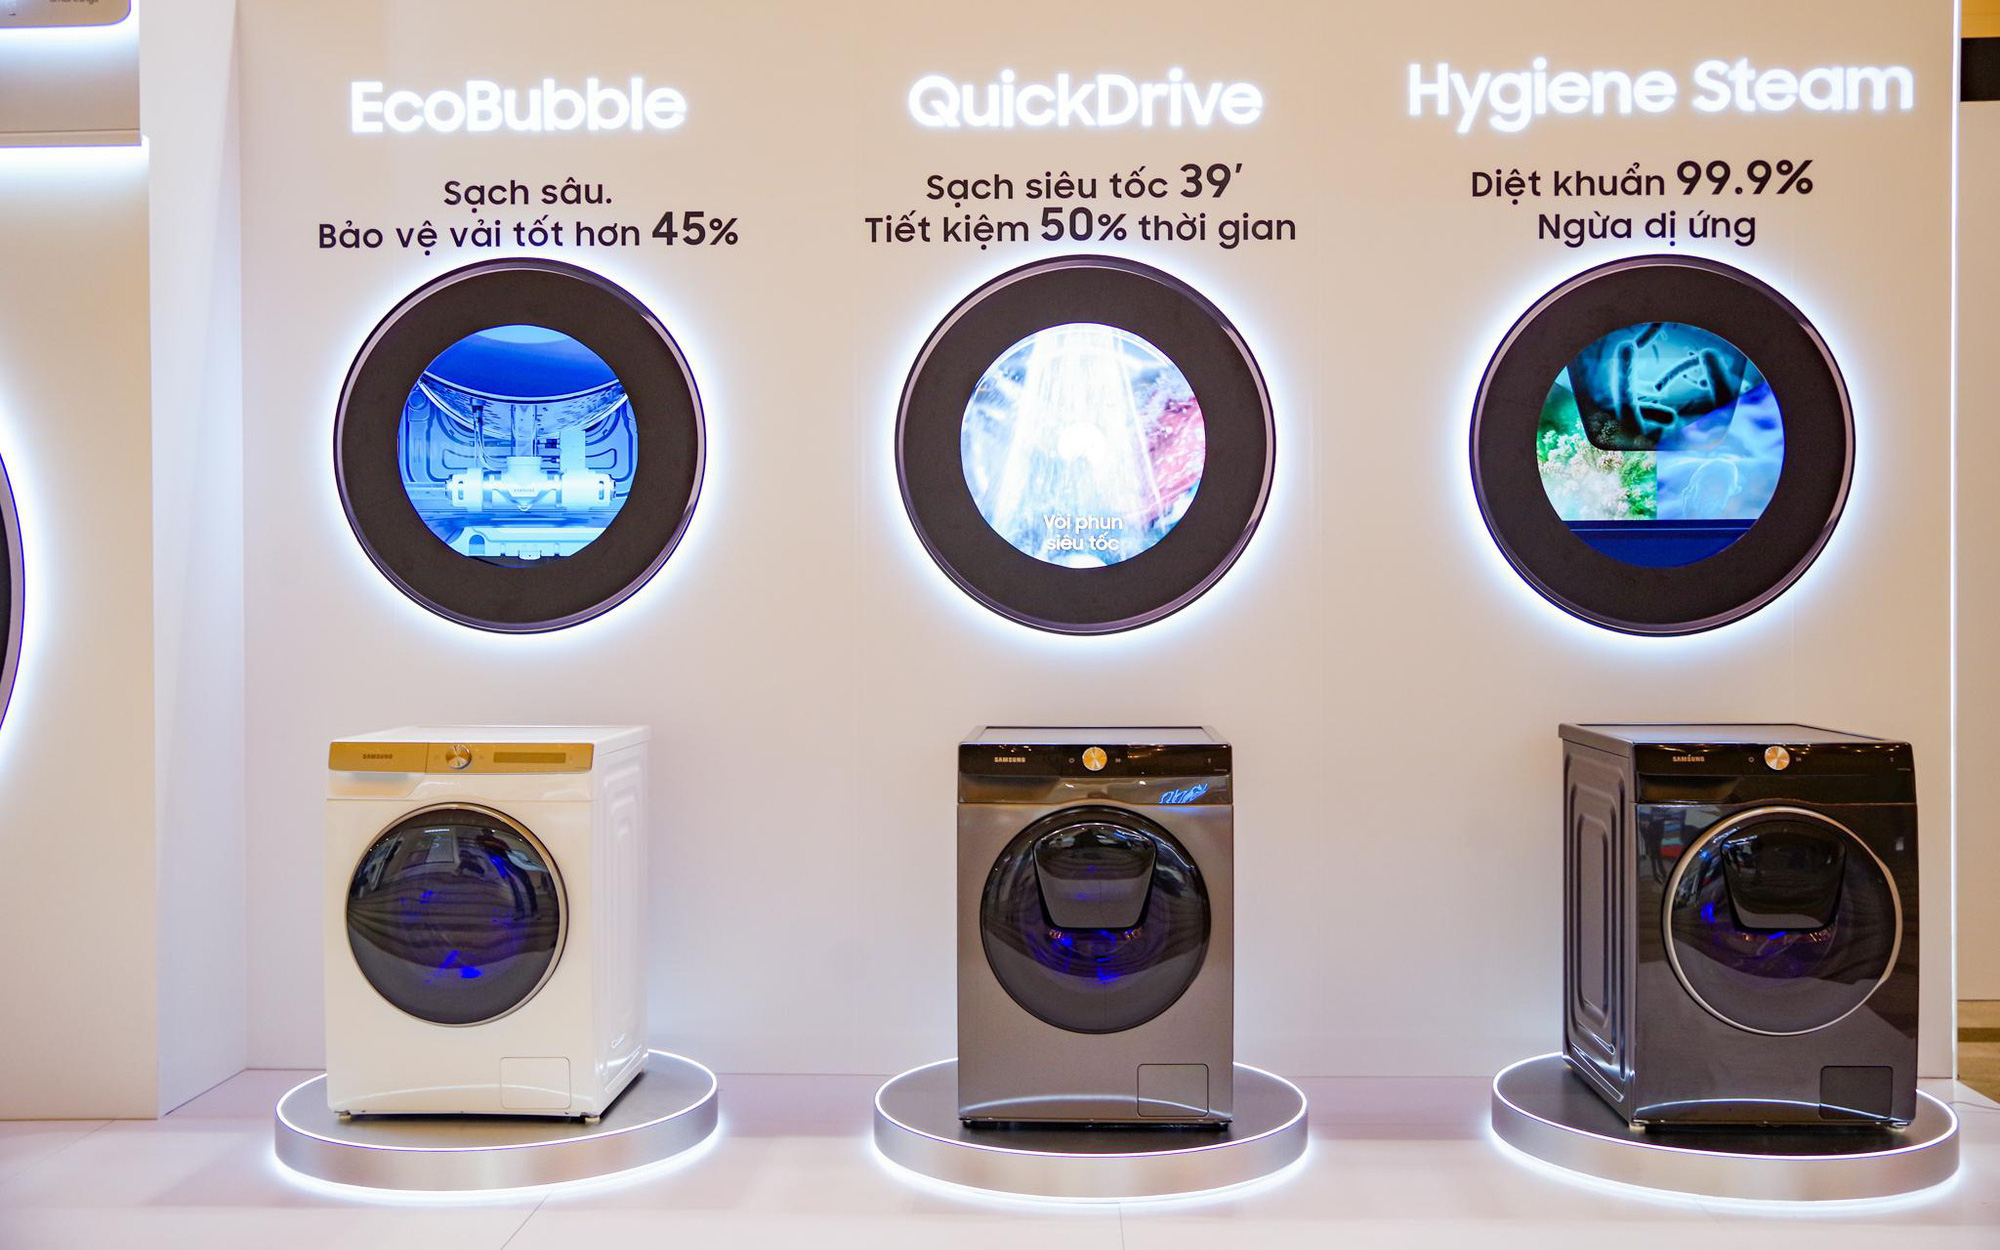 Từ chiếc máy giặt có trí tuệ nhân tạo tới TV công nghệ hoàn toàn mới, đây là cách Samsung chinh phục người dùng